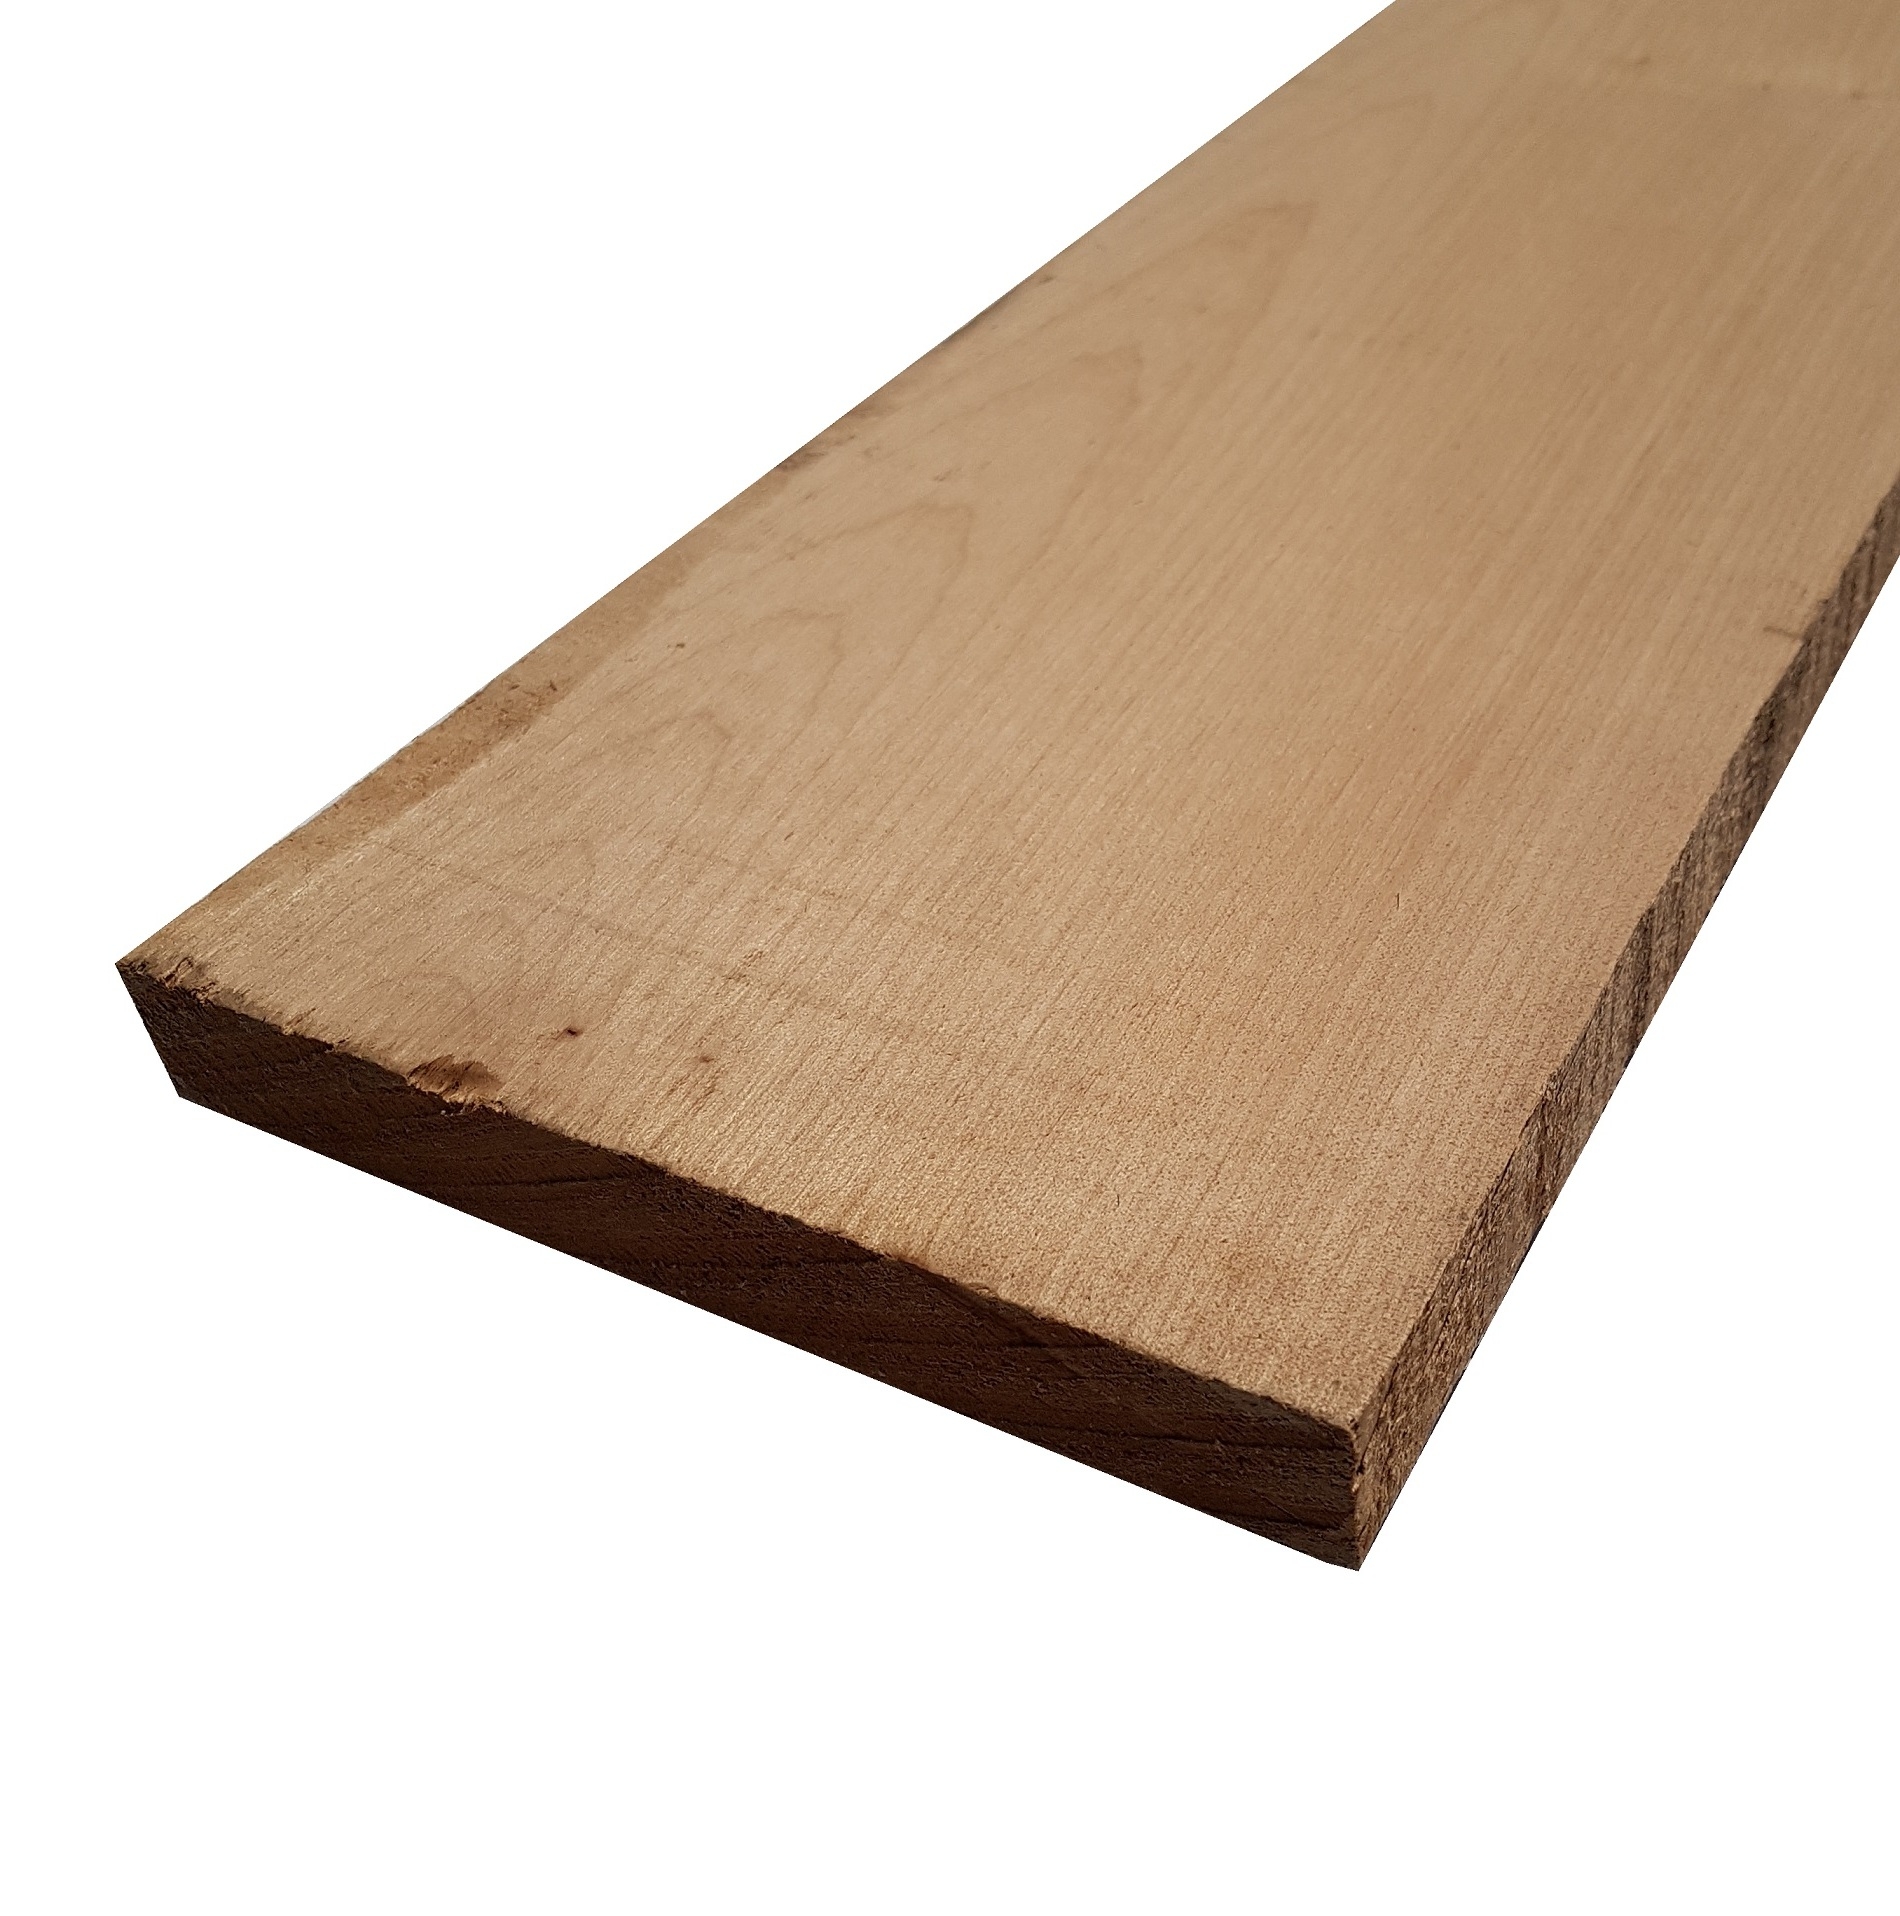 Tavola legno Acero Pacific Coast Maple Calibrato mm 24 x 100 x 2450